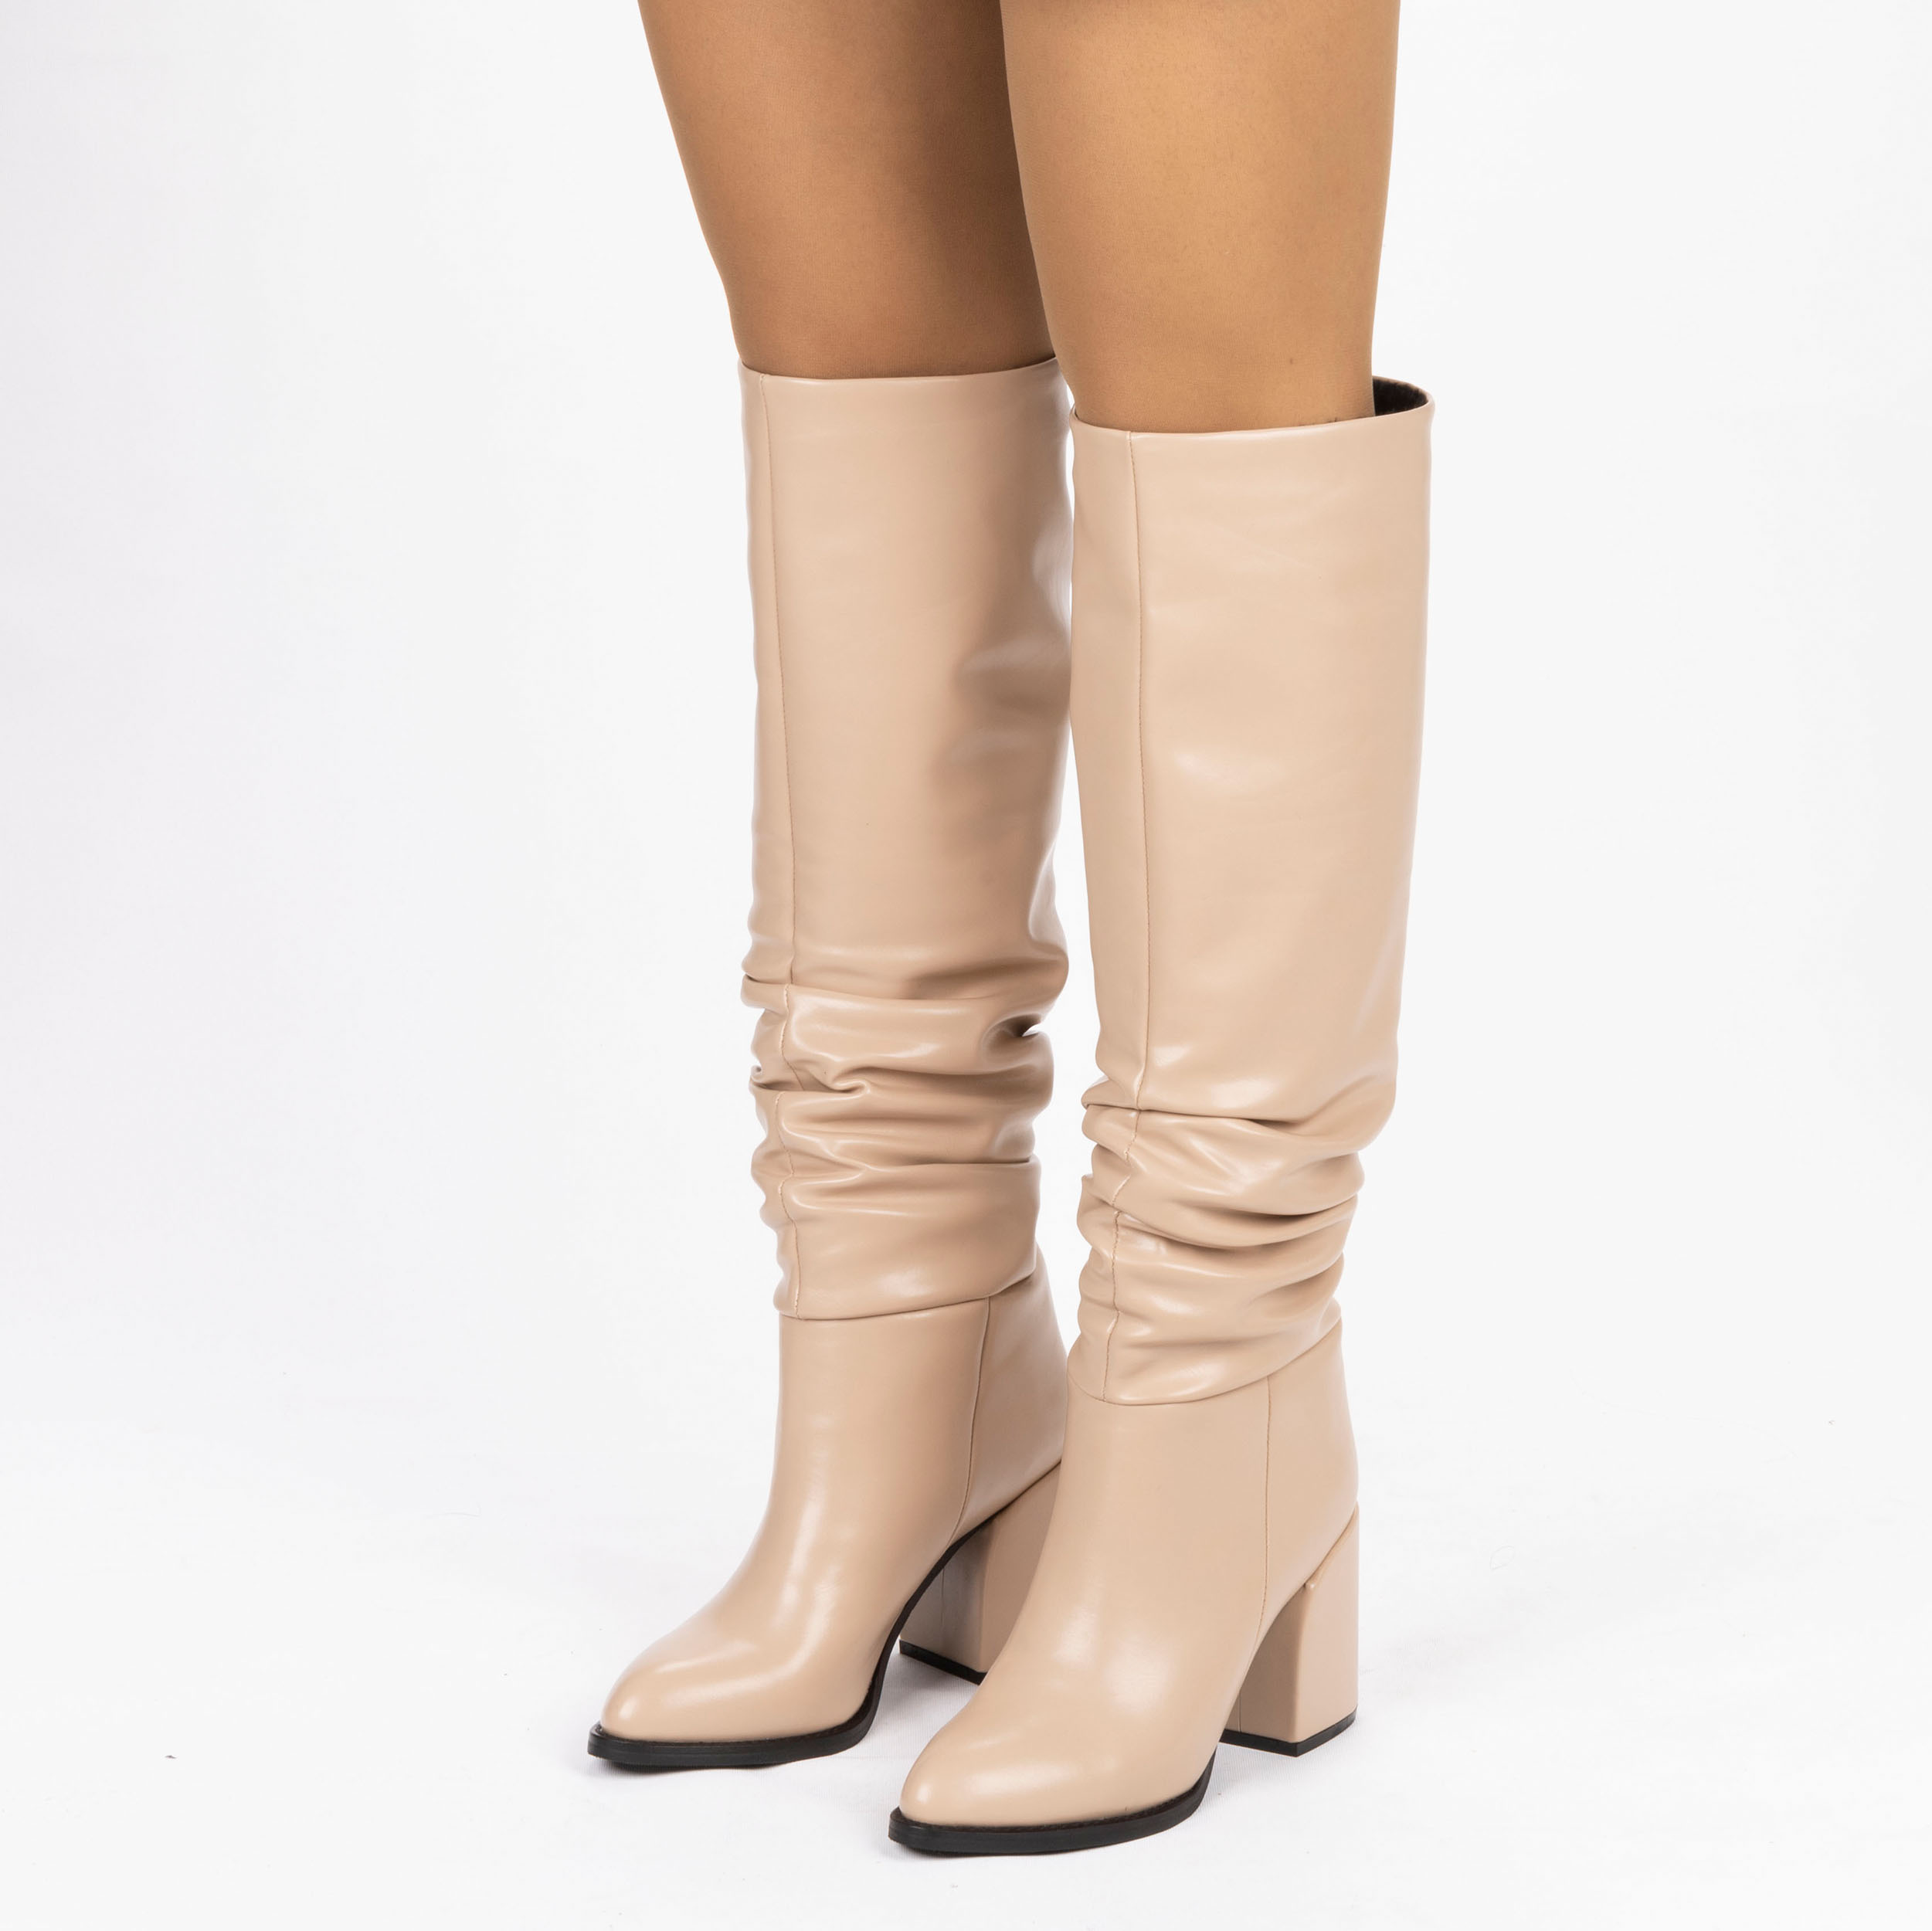 Kadın Sivri Burunlu Kalın Topuklu Körüklü Diz Altı Çizme, Renk: Nude - Cilt, Beden: 40